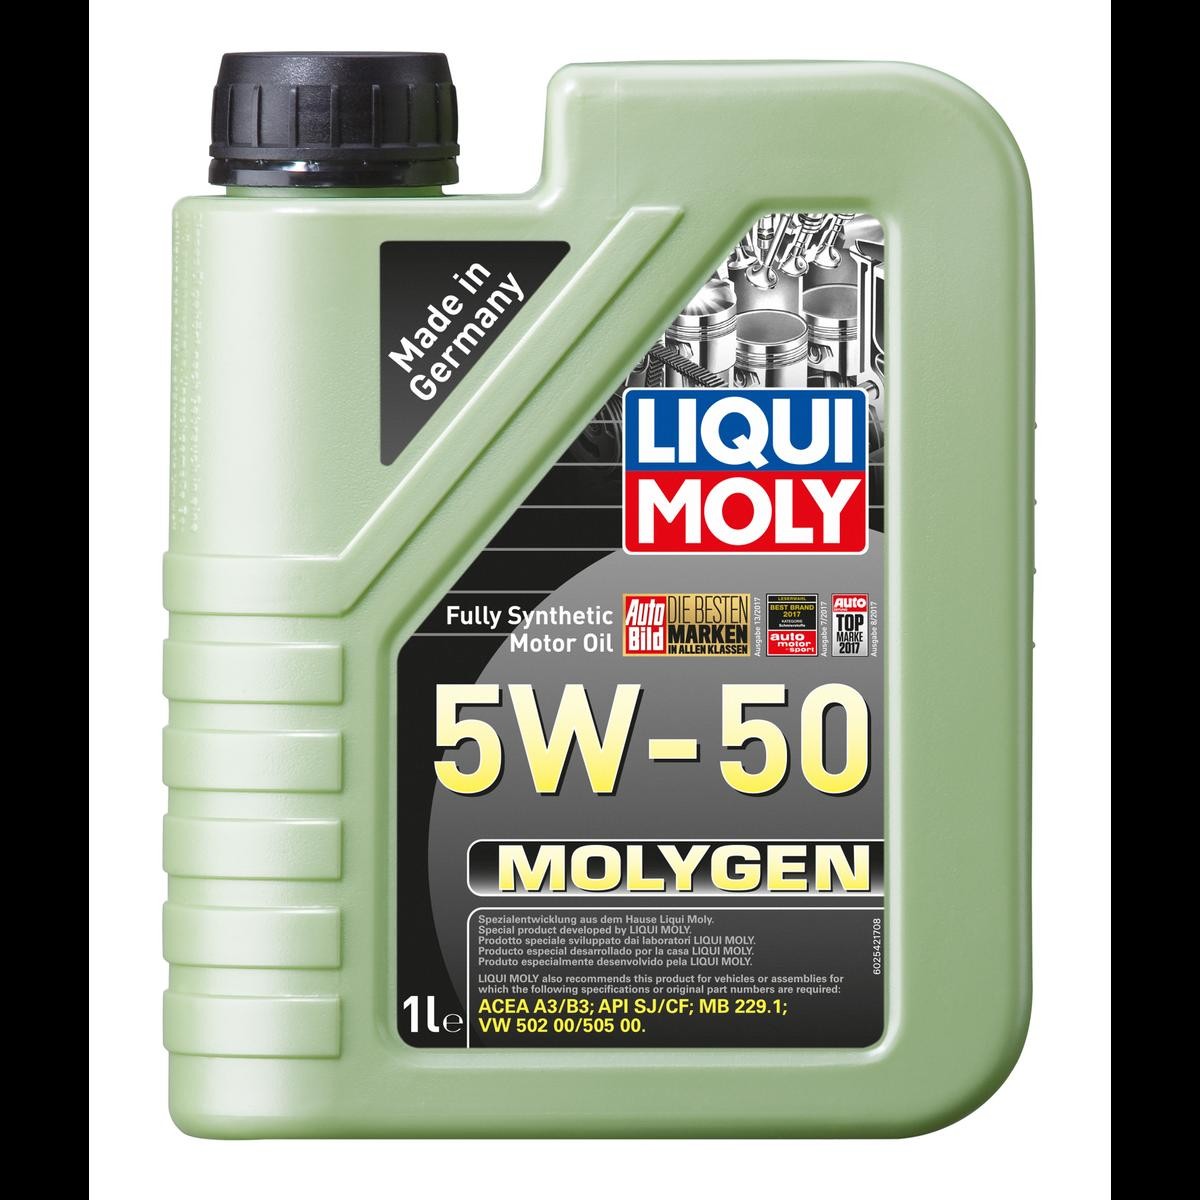 LIQUI MOLY Molygen 5W 50 VW 505 00 1I